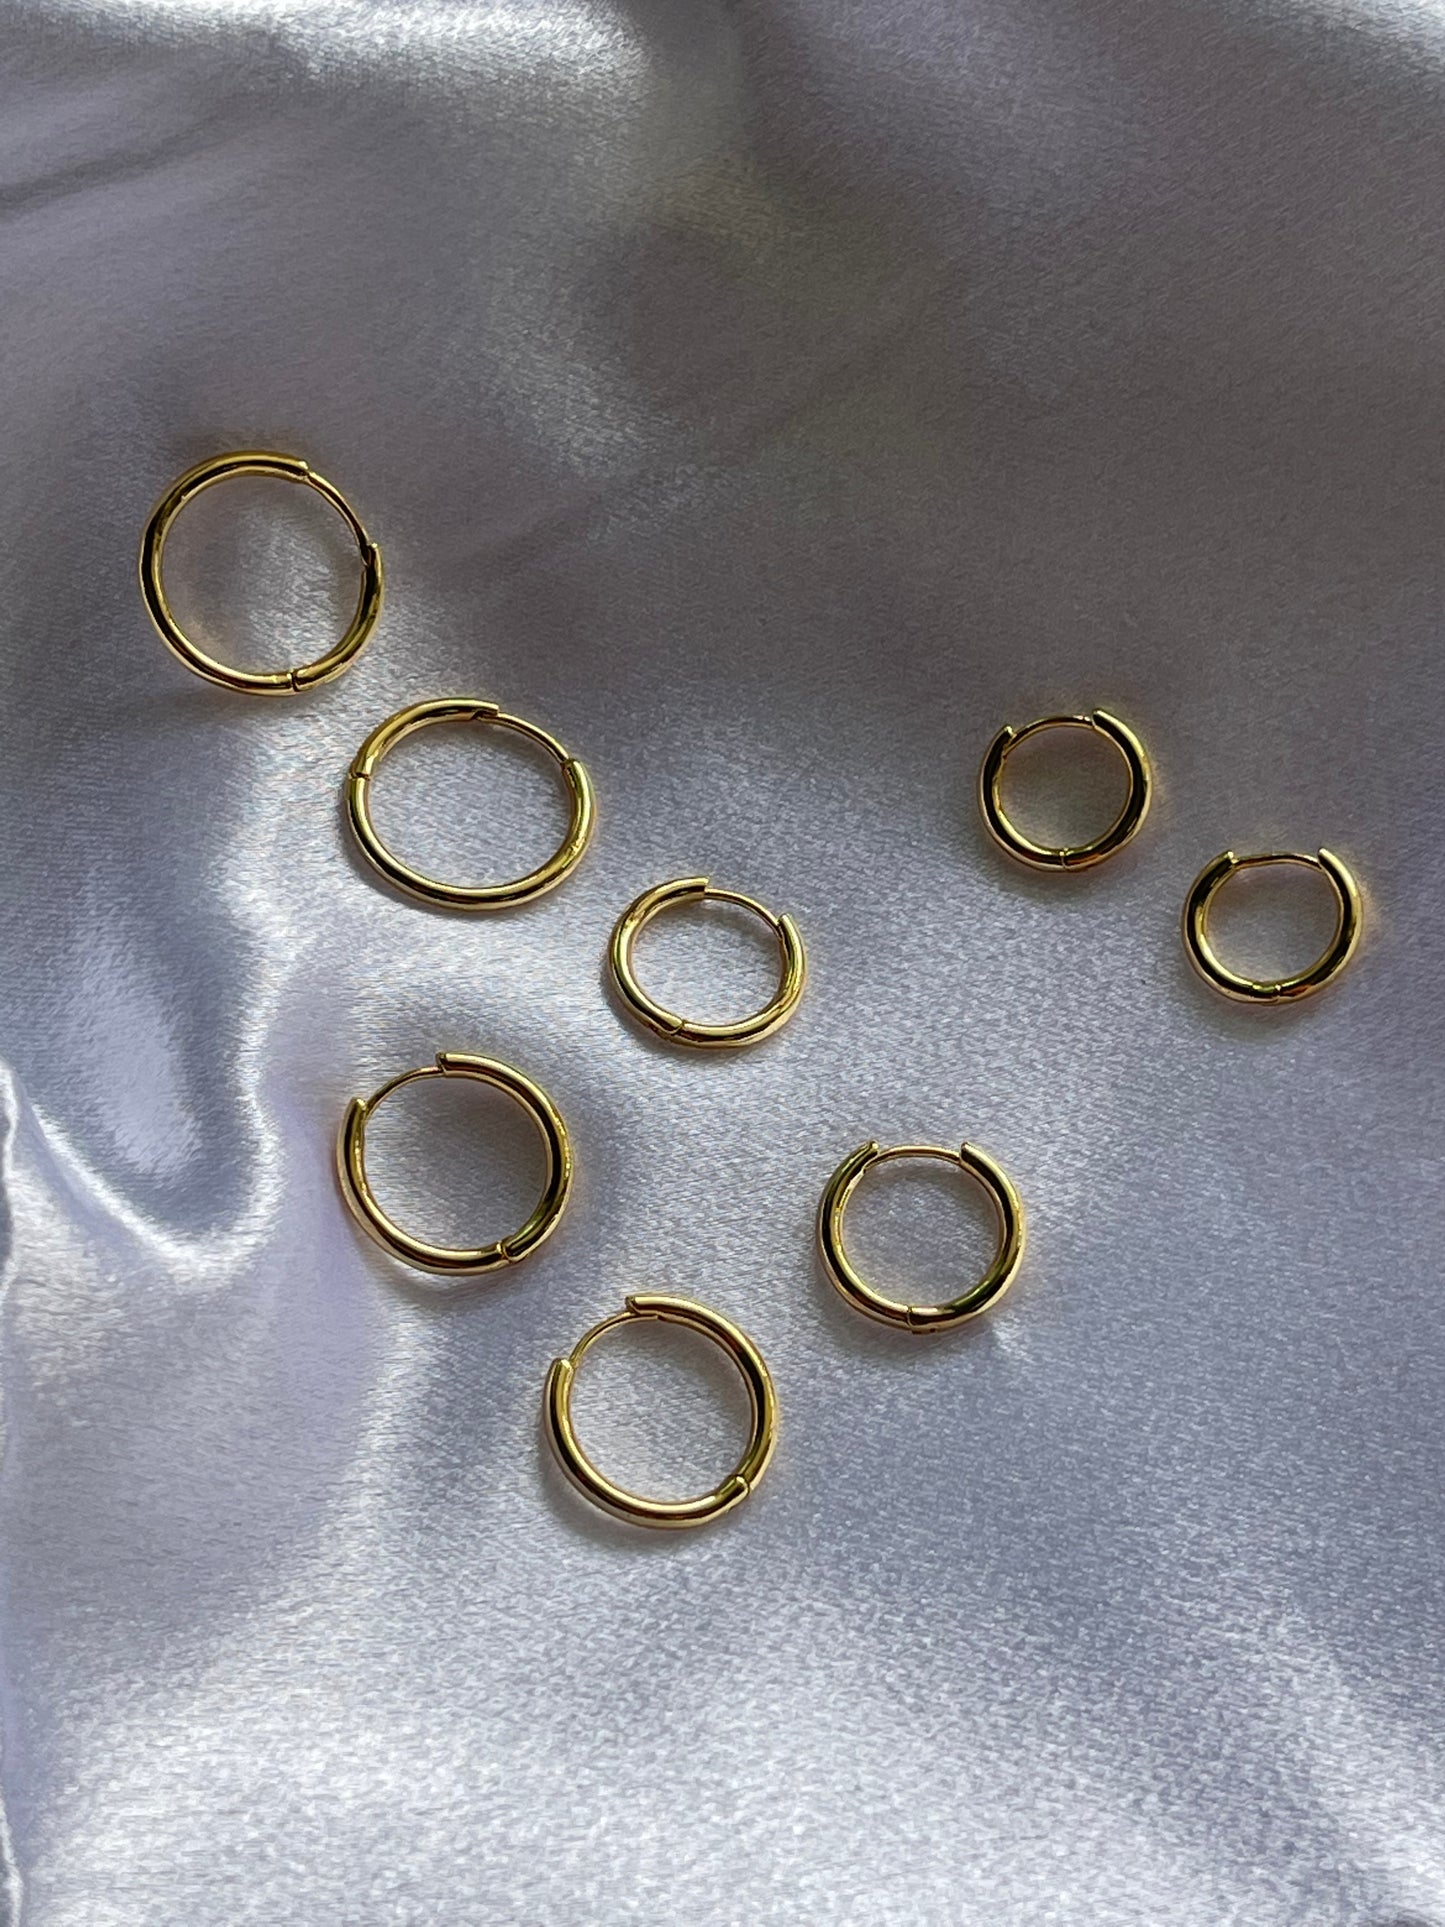 4 set millennials earrings Gold